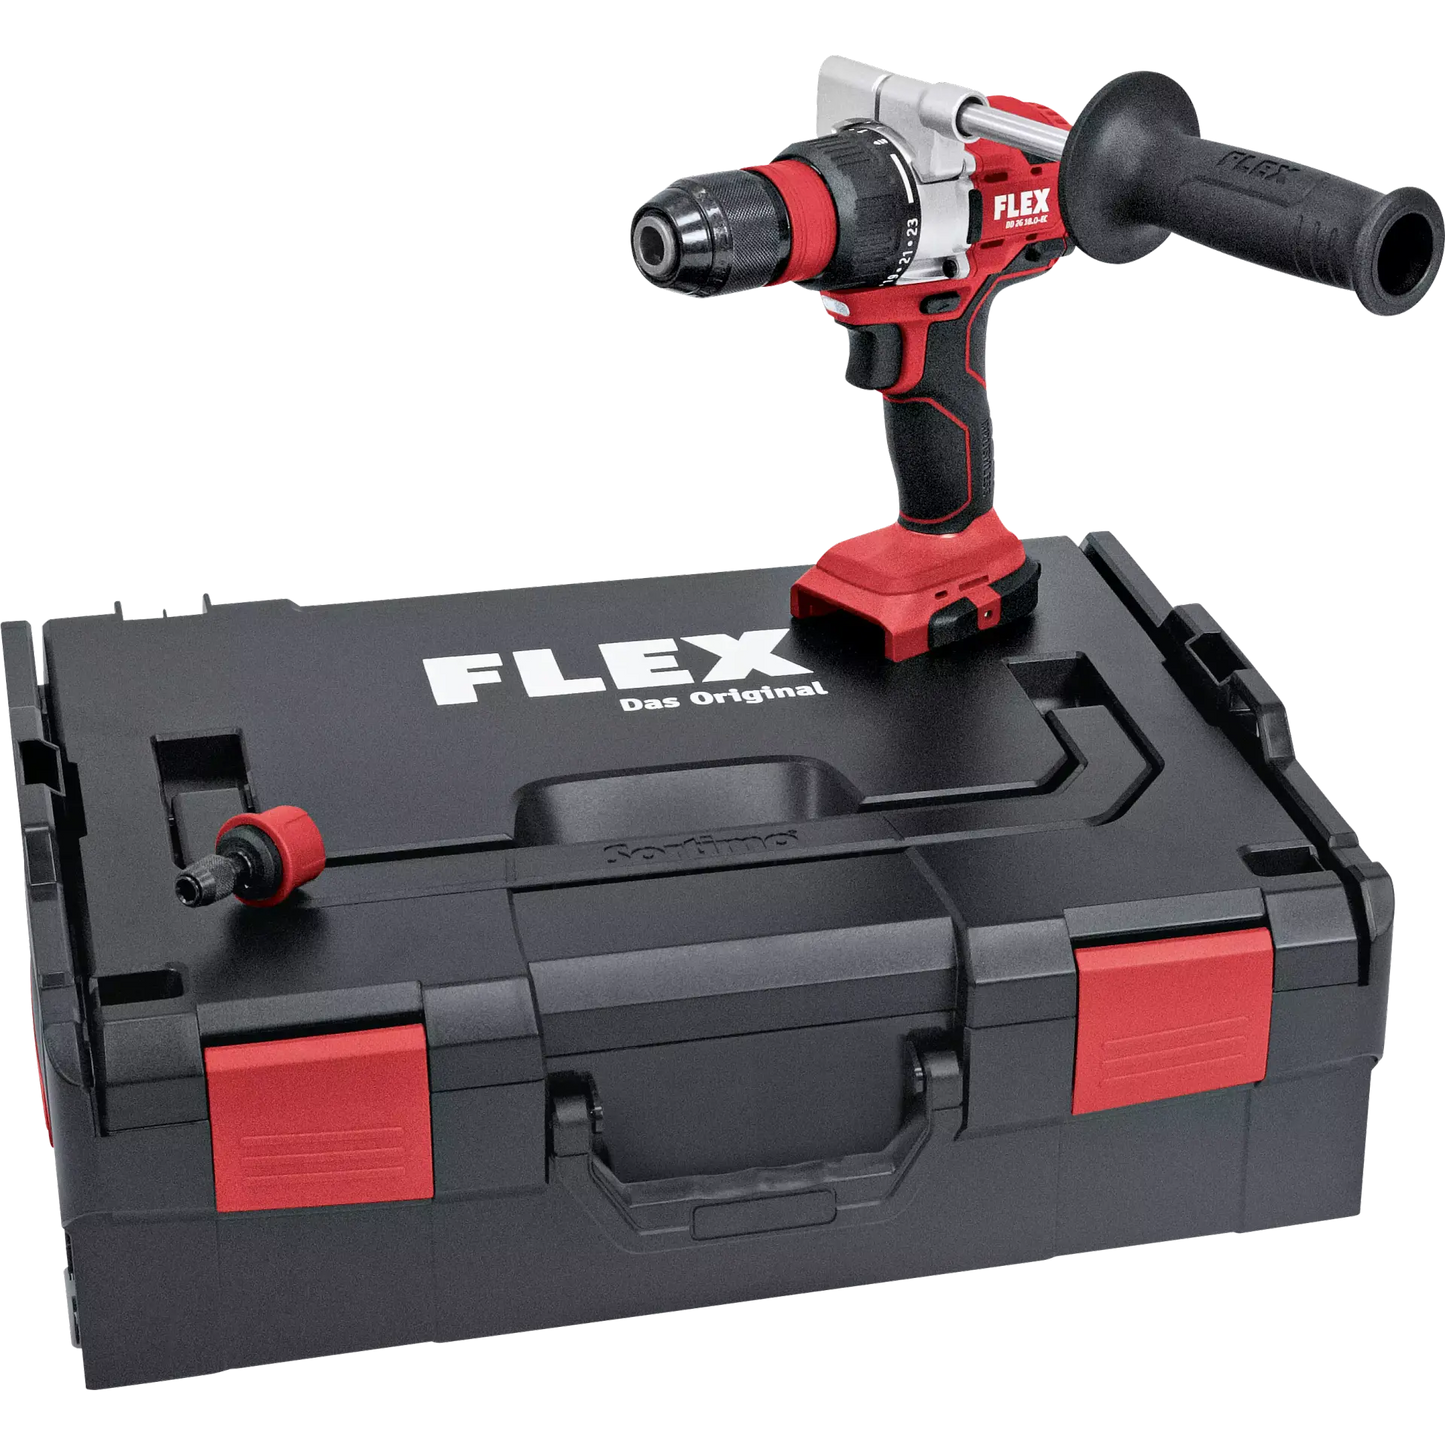 FLEX DD 2G 18.0-EC Akku-Bohrschrauber 2-Gang 18.0 V